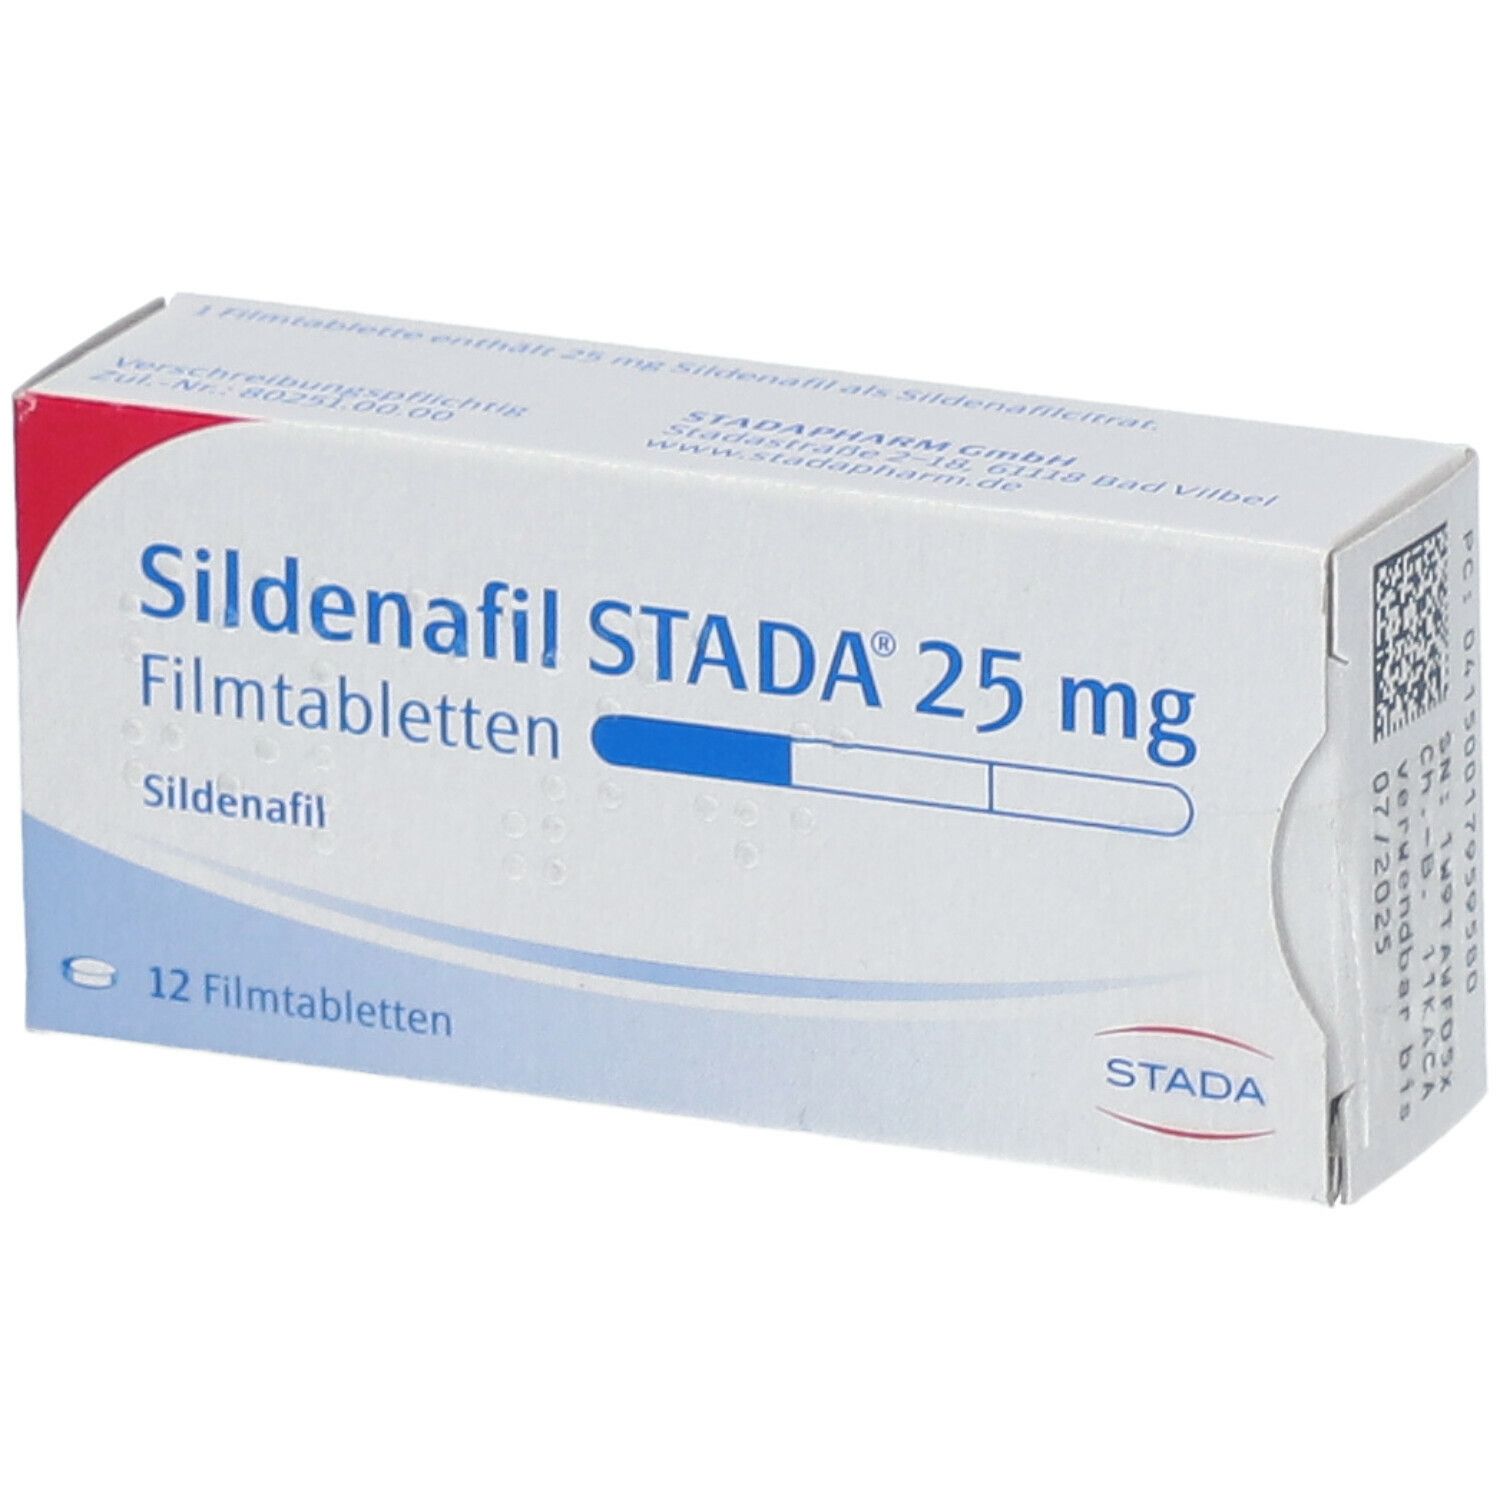 Sildenafil STADA® 25 mg